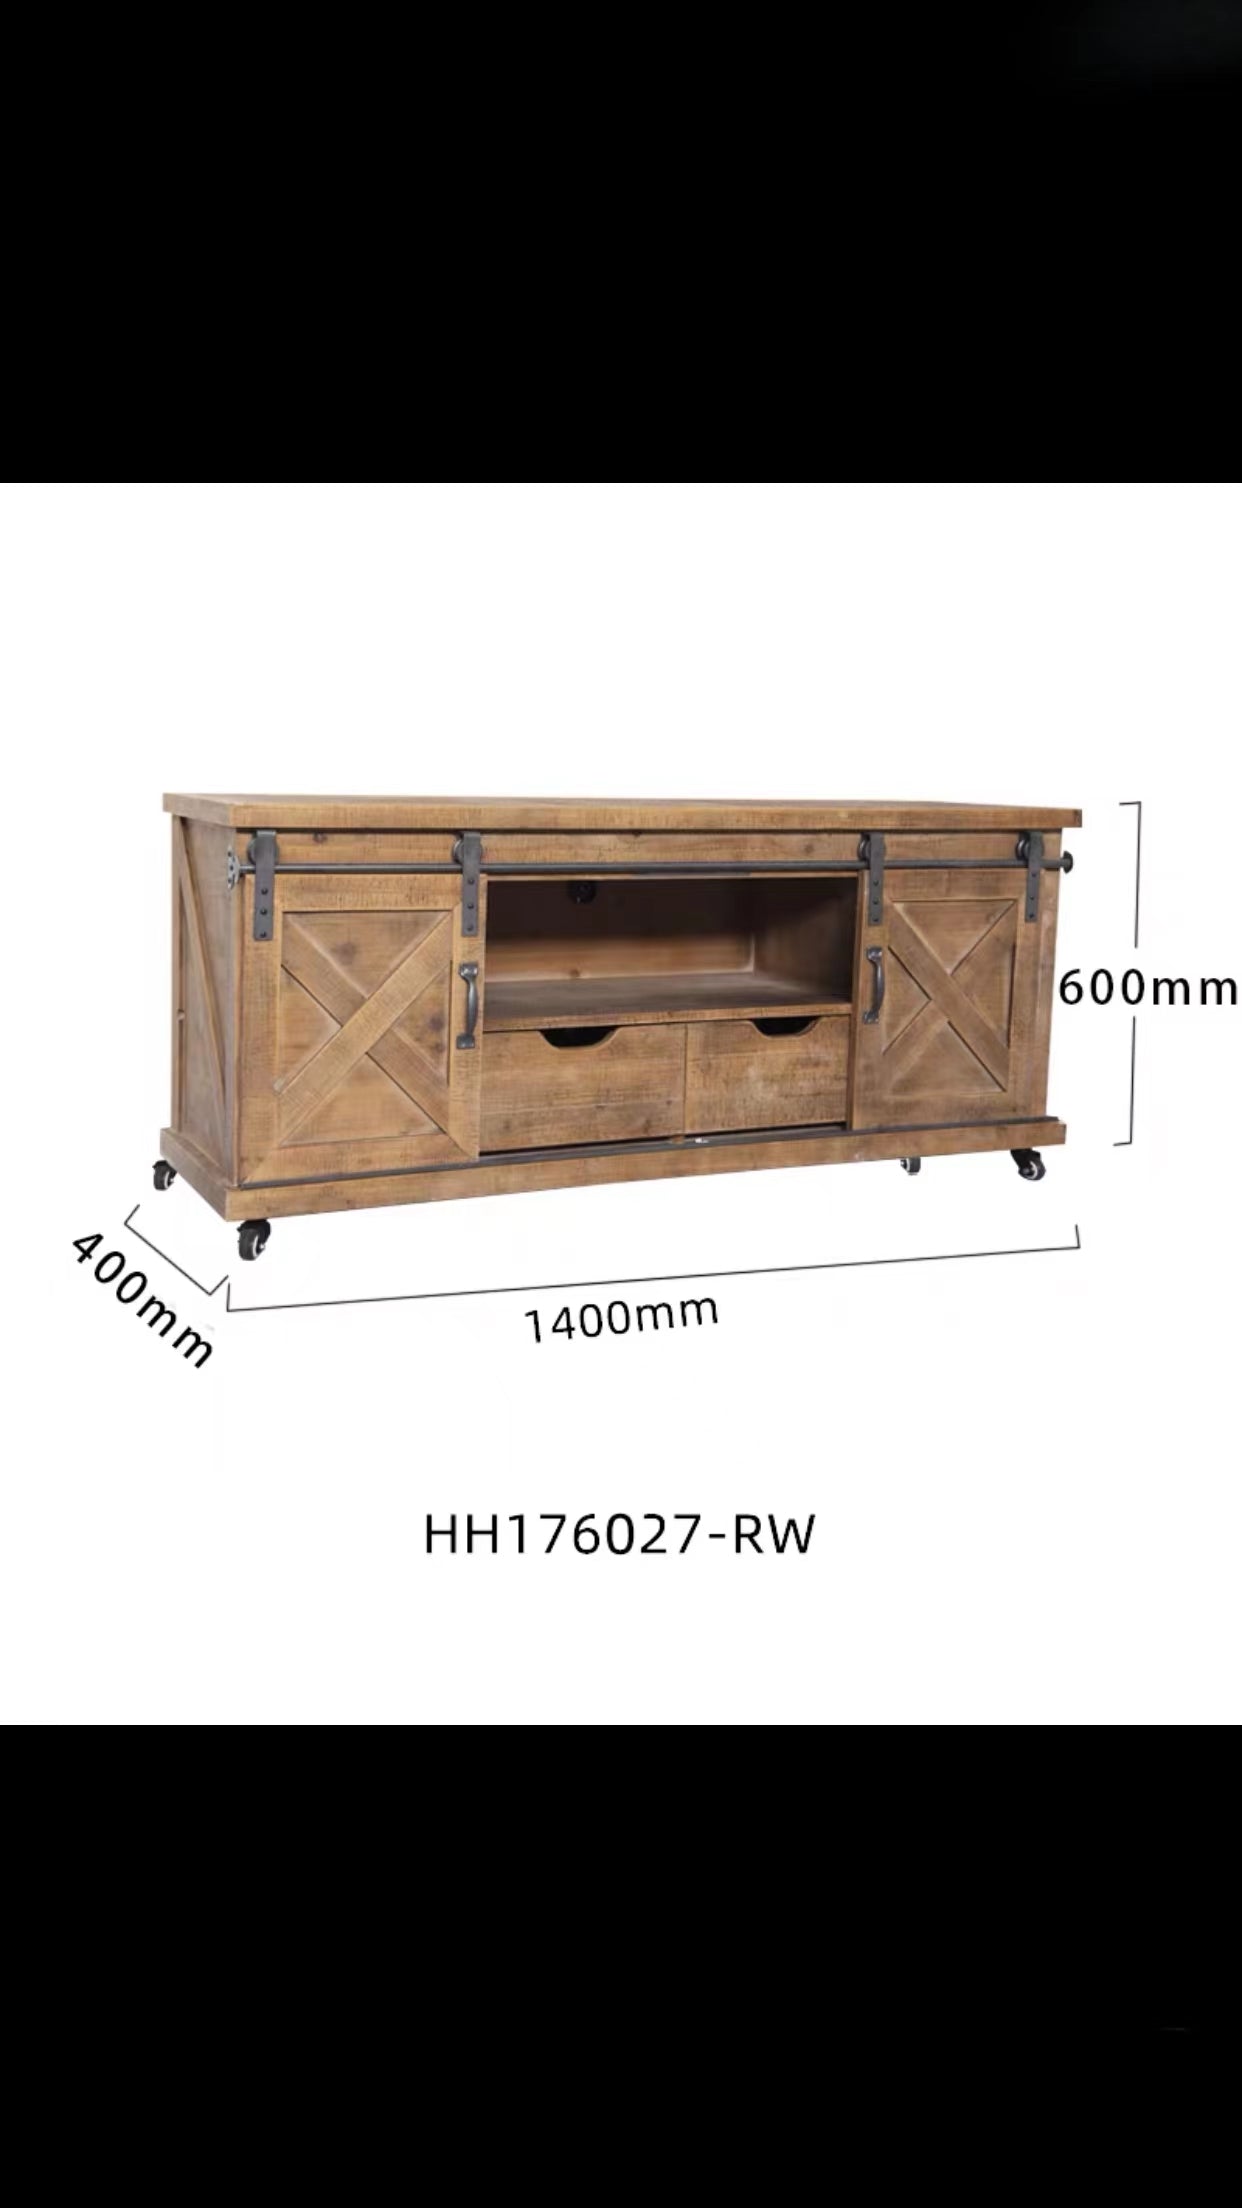 Evesham Solid Wood Sideboard - 4 Seasons Home Gadgets